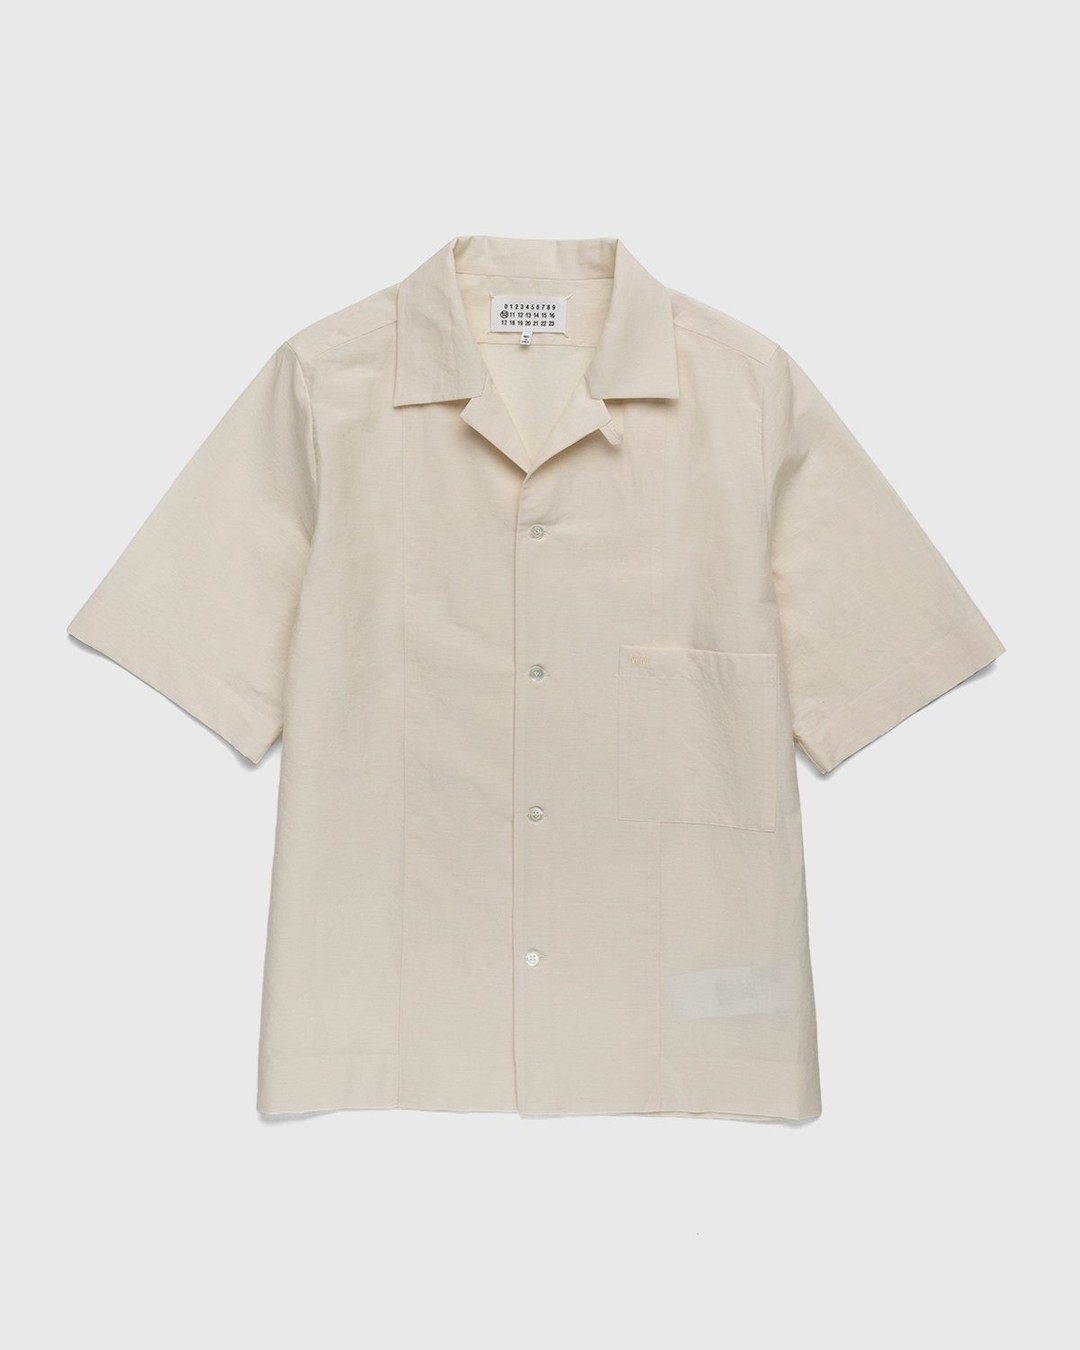 Maison Margiela – Ivory Button-Up Shirt Beige - Shortsleeve Shirts - White - Image 1